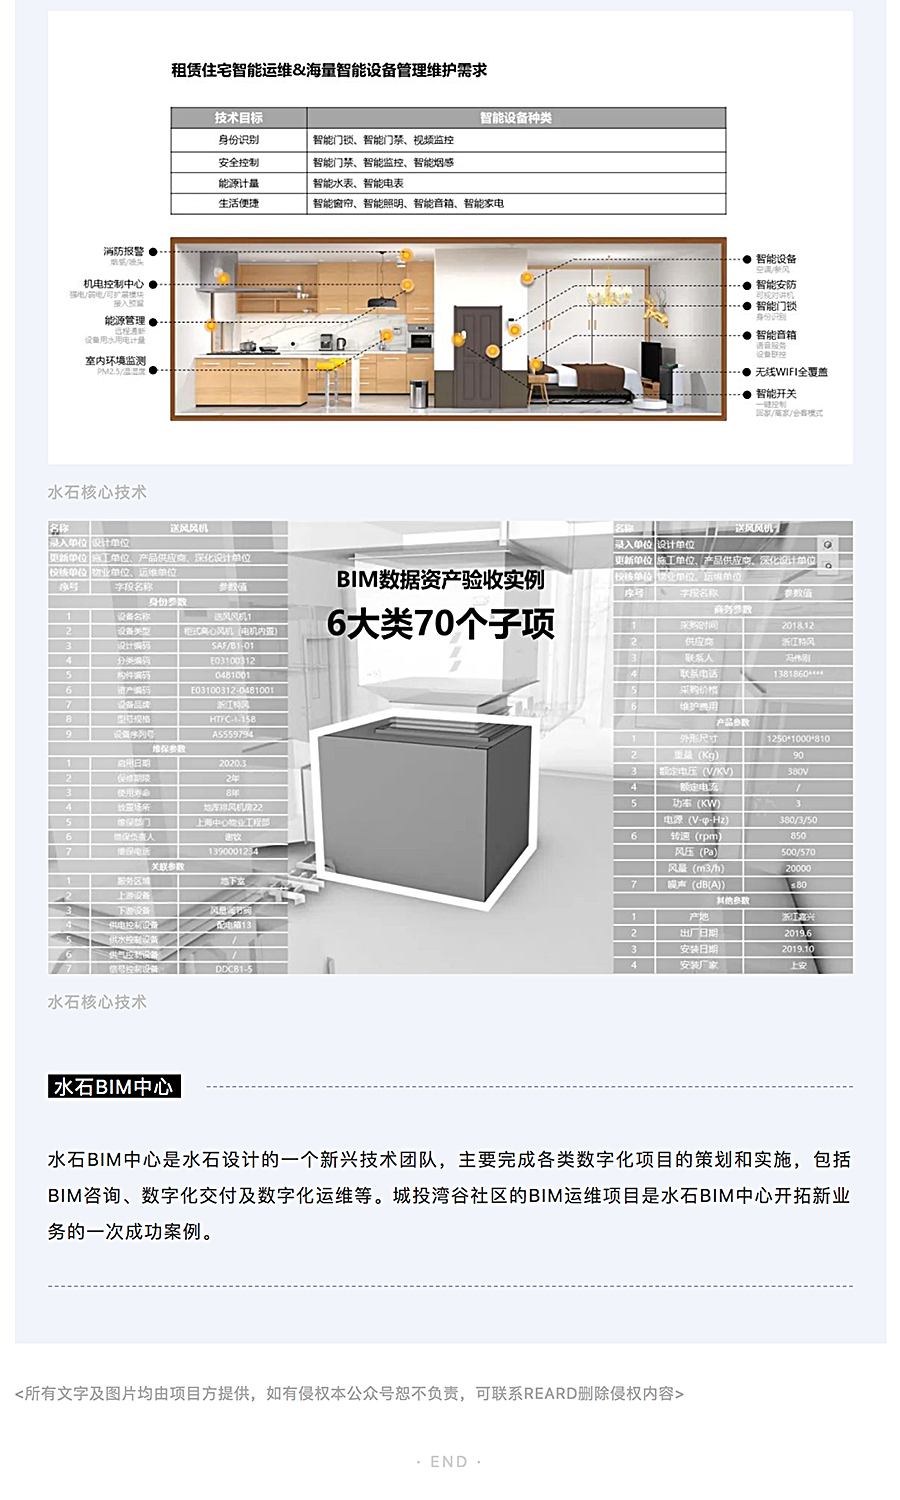 千万级数据贯通-_-上海城投湾谷租赁住宅项目BIM运维研究与实施_0004_图层-5.jpg